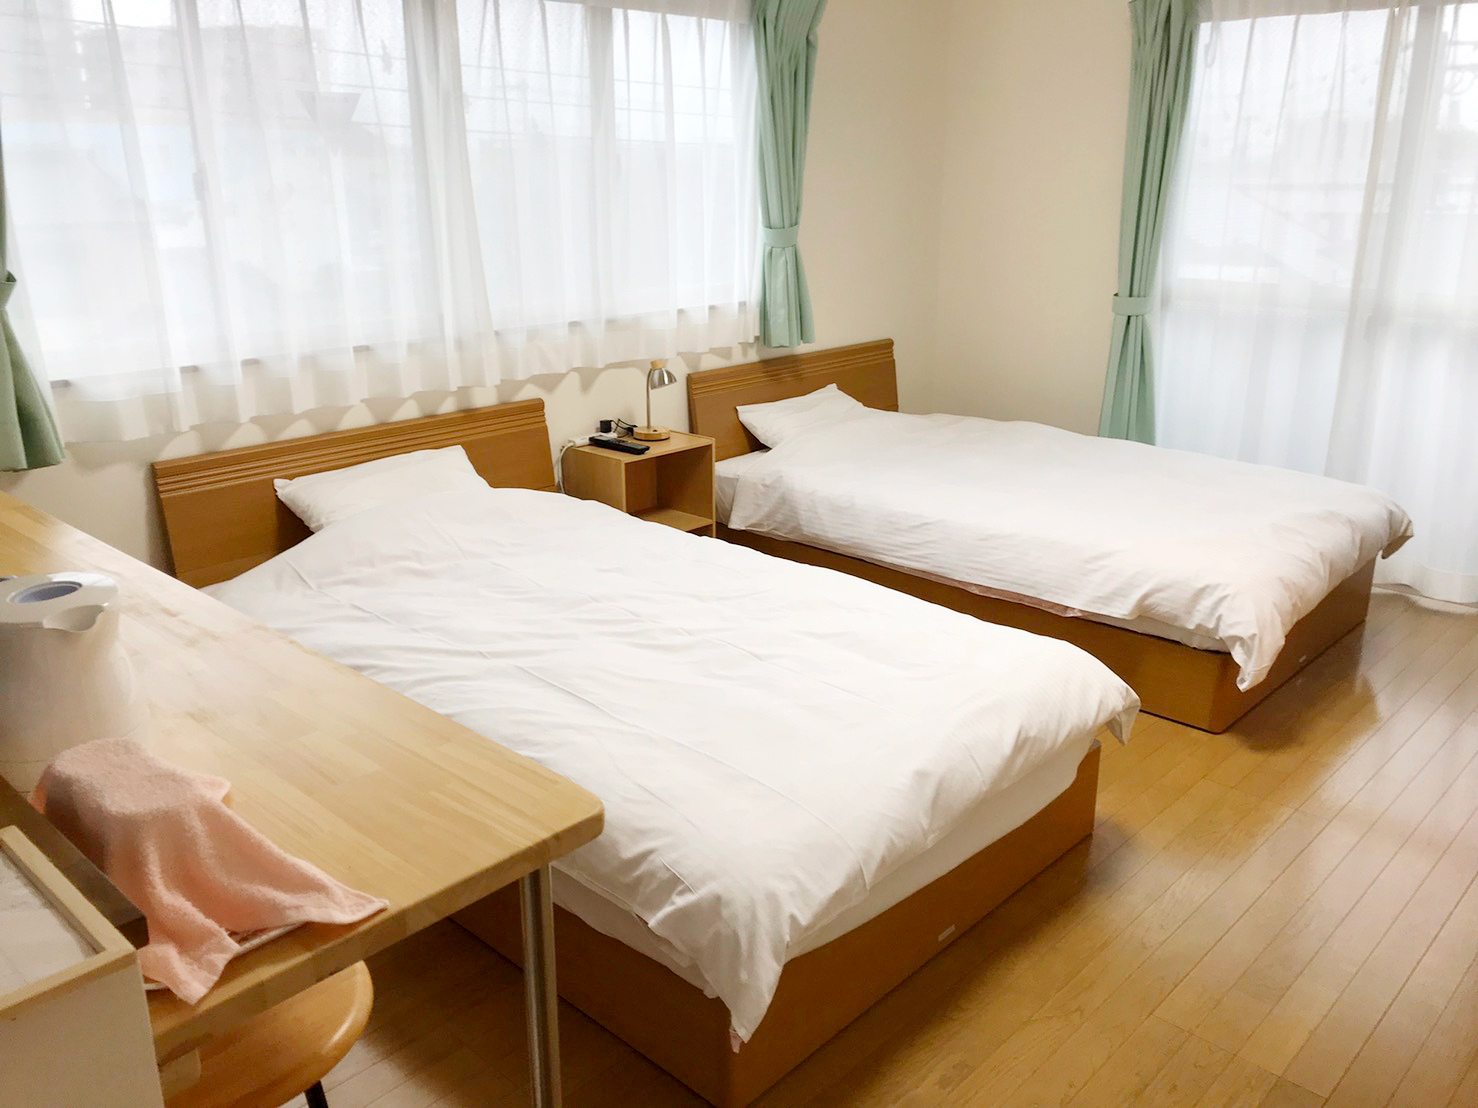 八幡宮など富士市の観光に便利！富士市でリーズナブル、格安で広い部屋へ泊まるなら、ゲストハウスのむらへ。